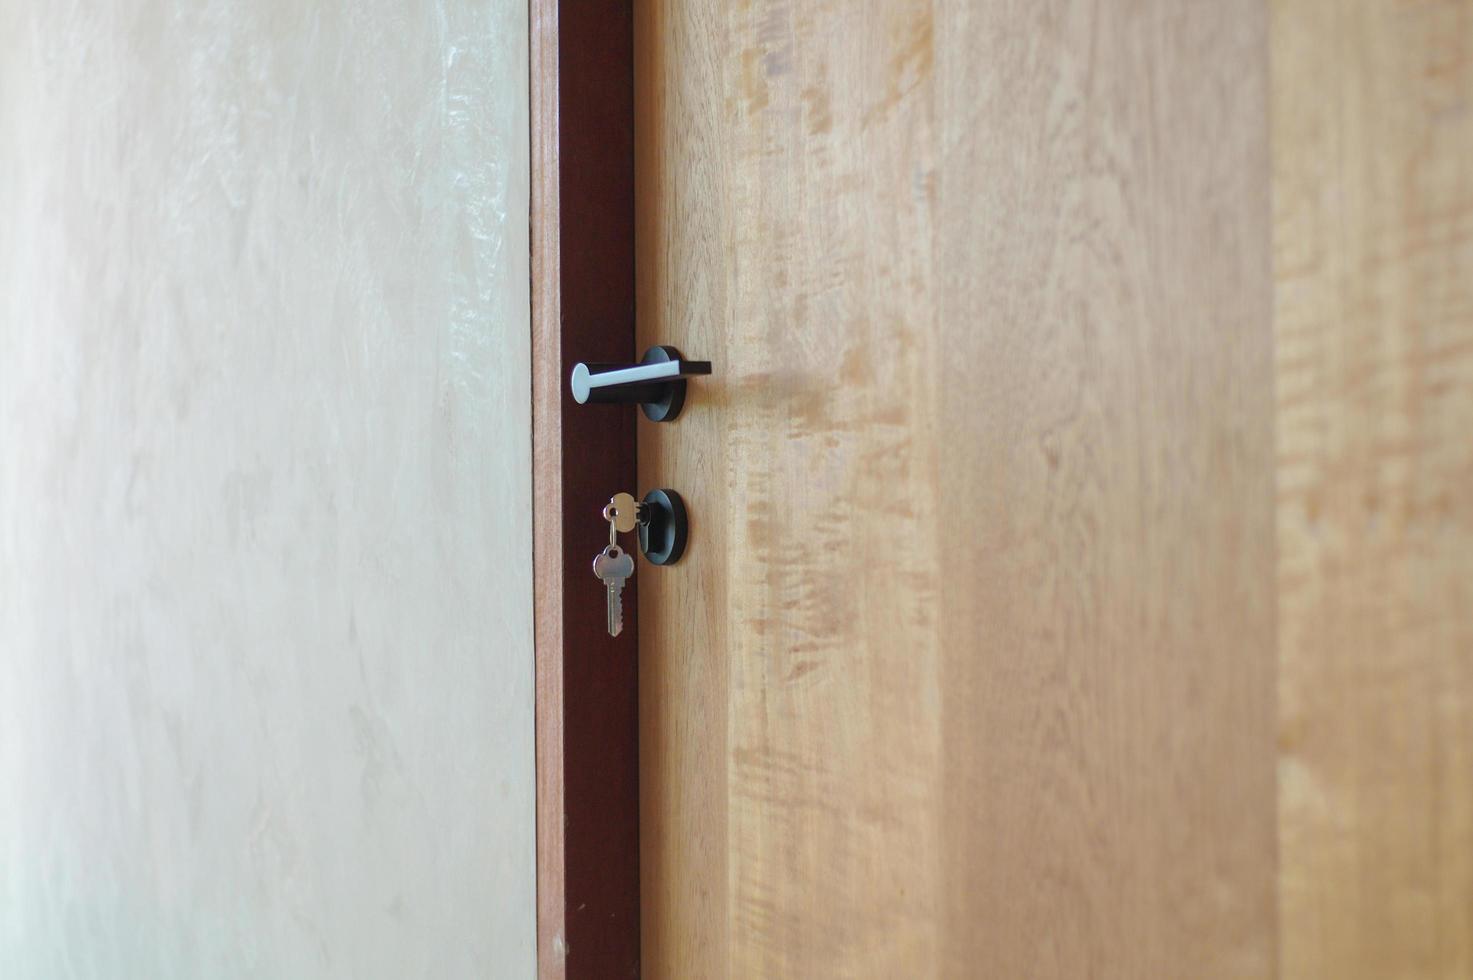 messa a fuoco selettiva sullo stile moderno della manopola sulla porta di legno con chiavi appese alla serratura foto